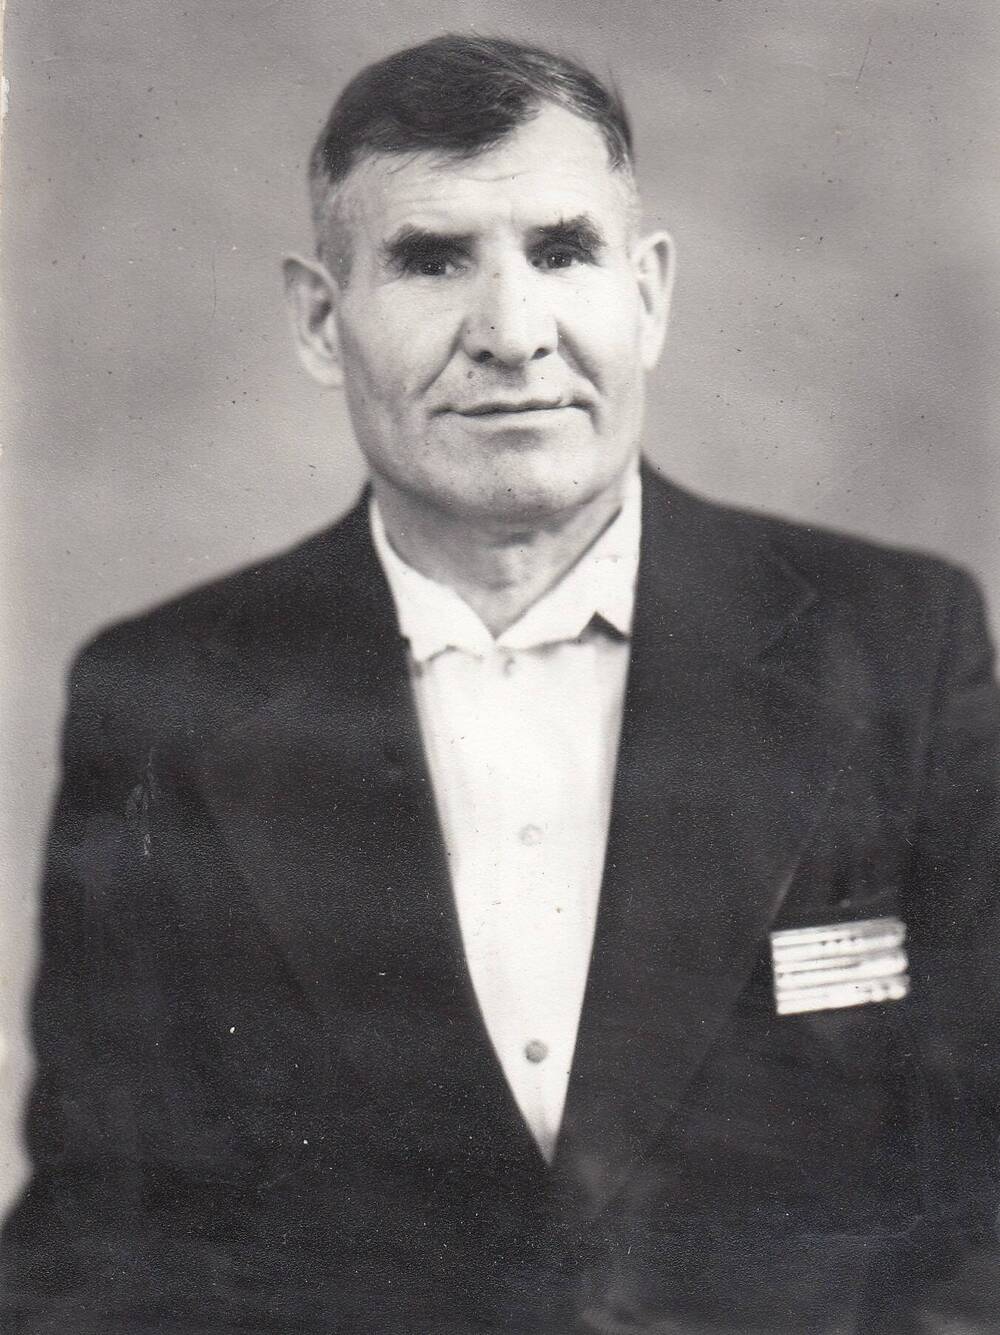 Фотография черно-белая с изображением поясного портрета Макаева Александра Яковлевича.